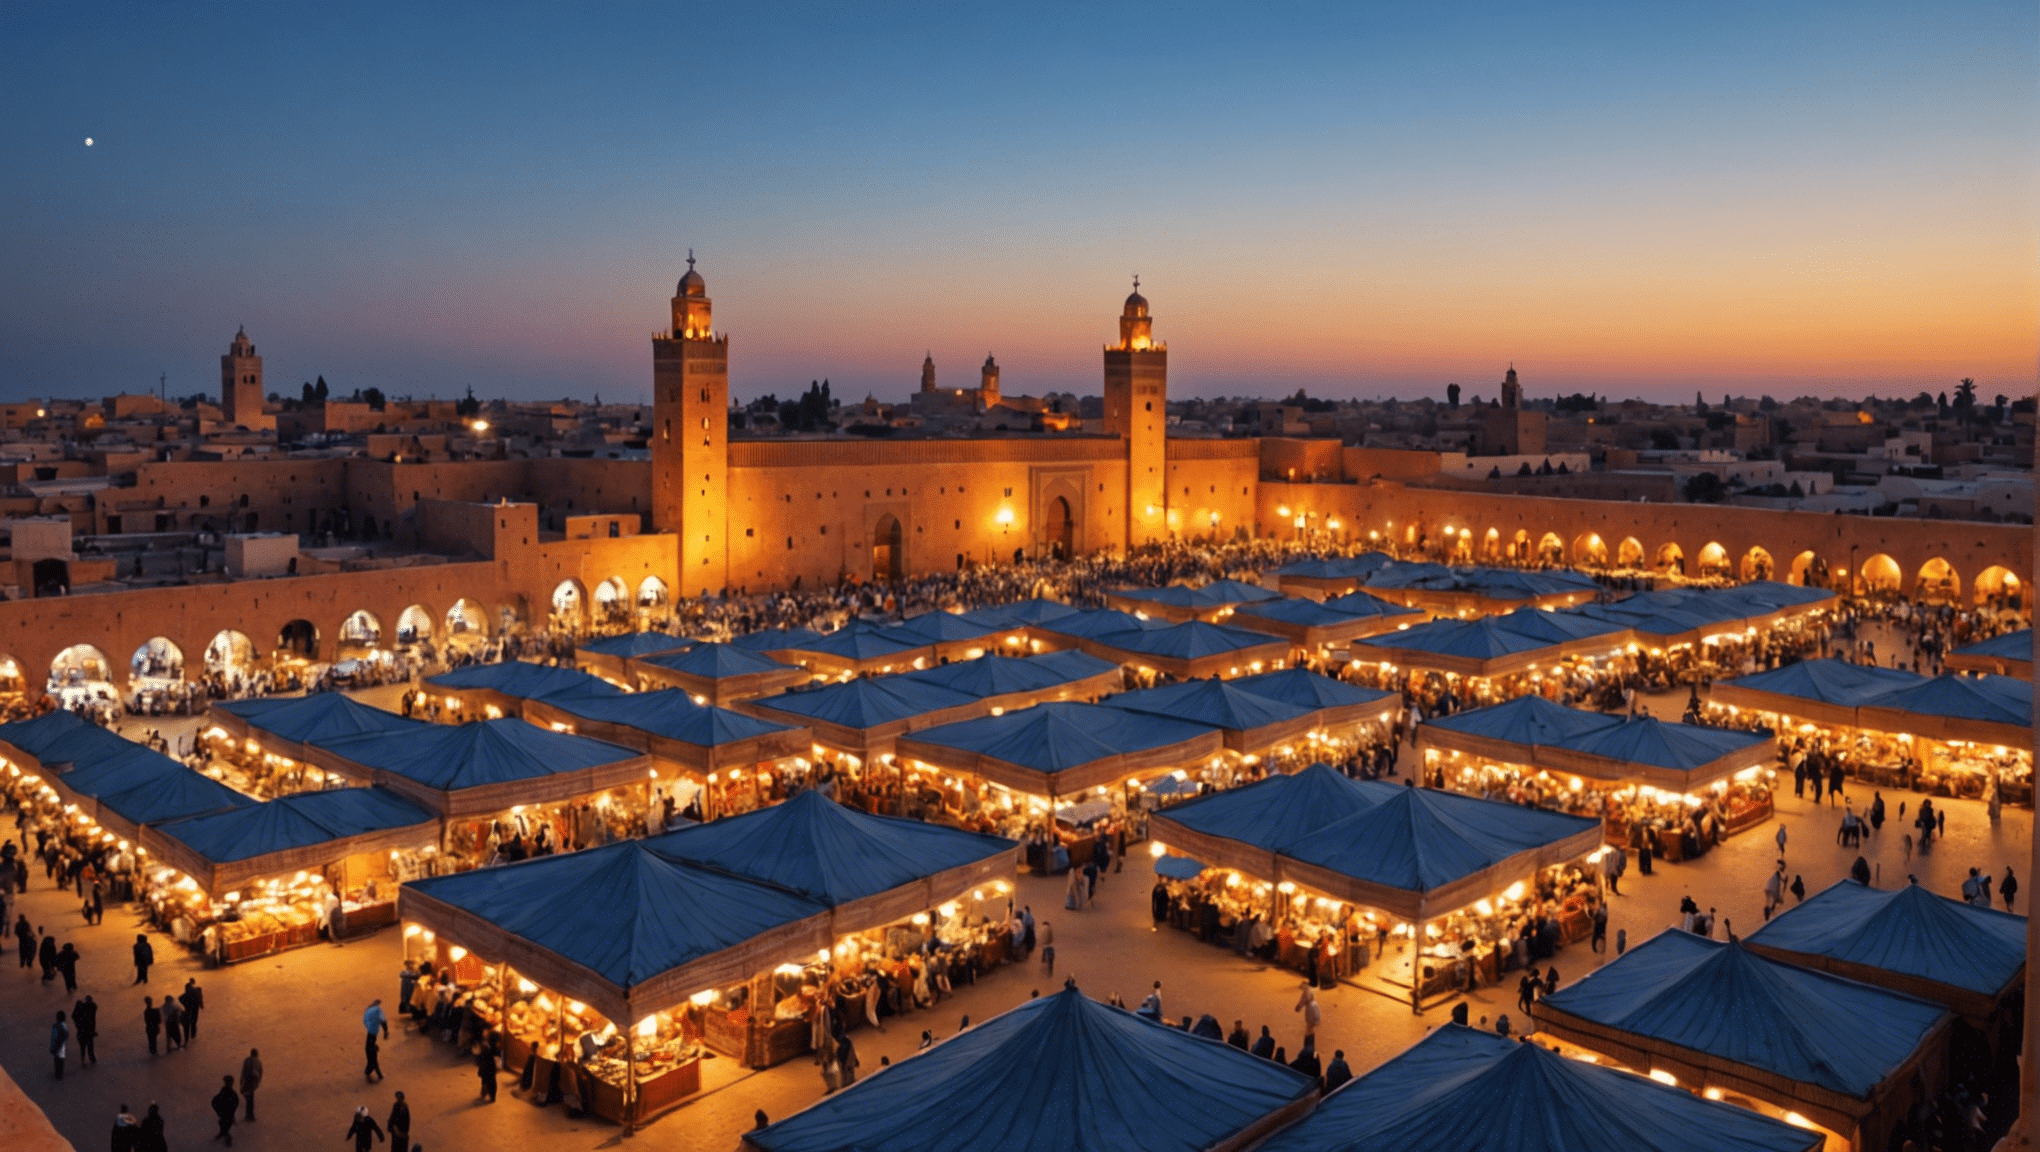 scopri come viene celebrato il Ramadan a Marrakech e sperimenta le tradizioni, i costumi e il cibo delizioso durante questo mese sacro in Marocco.